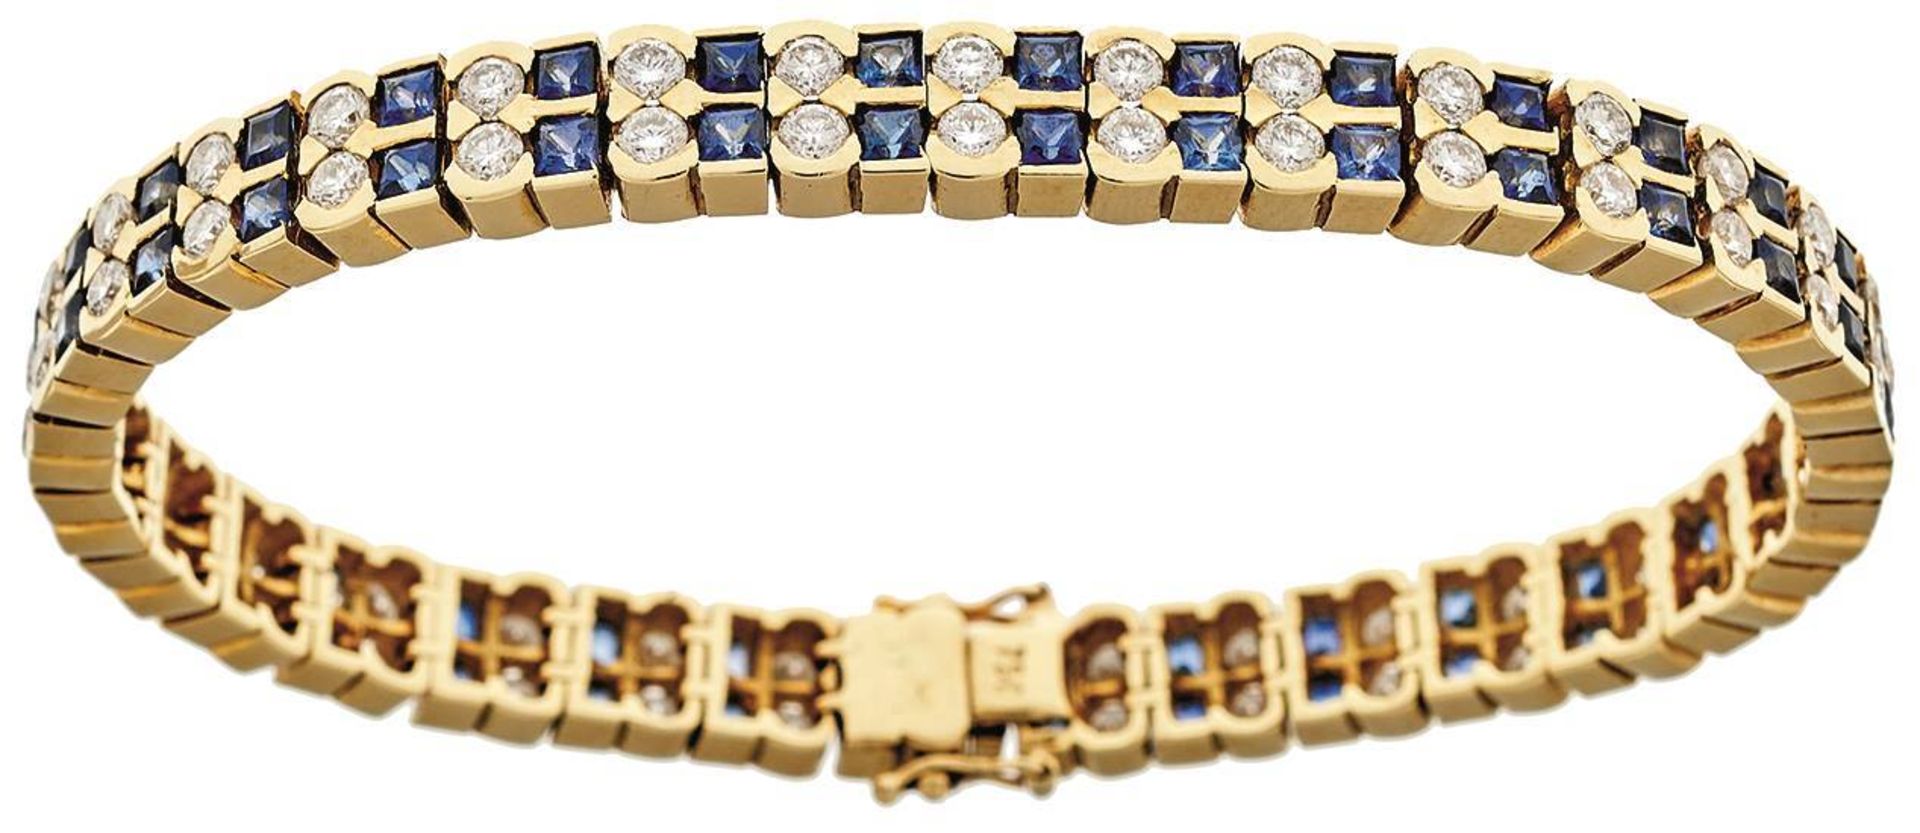 Saphir-Brillant-Armband, 750 Gelbgold, Punze, 66 Brillanten von zus. ca. 3,2ct, 64 Saphiren von zus. - Bild 2 aus 20